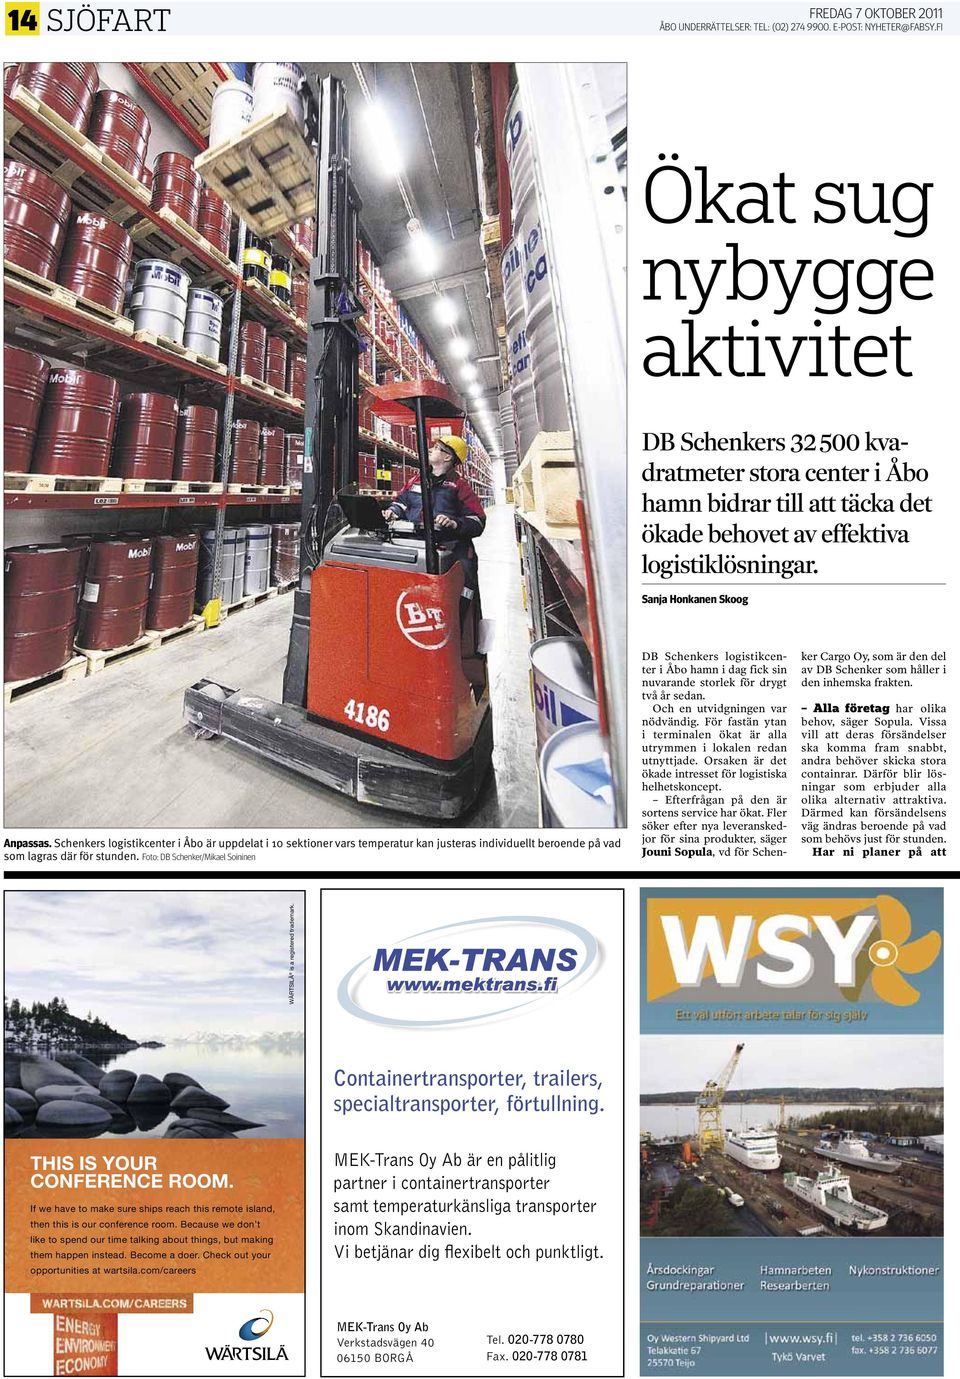 Foto: DB schenker/mikael soininen DB Schenkers logistikcenter i Åbo hamn i dag fick sin nuvarande storlek för drygt två år sedan. Och en utvidgningen var nödvändig.